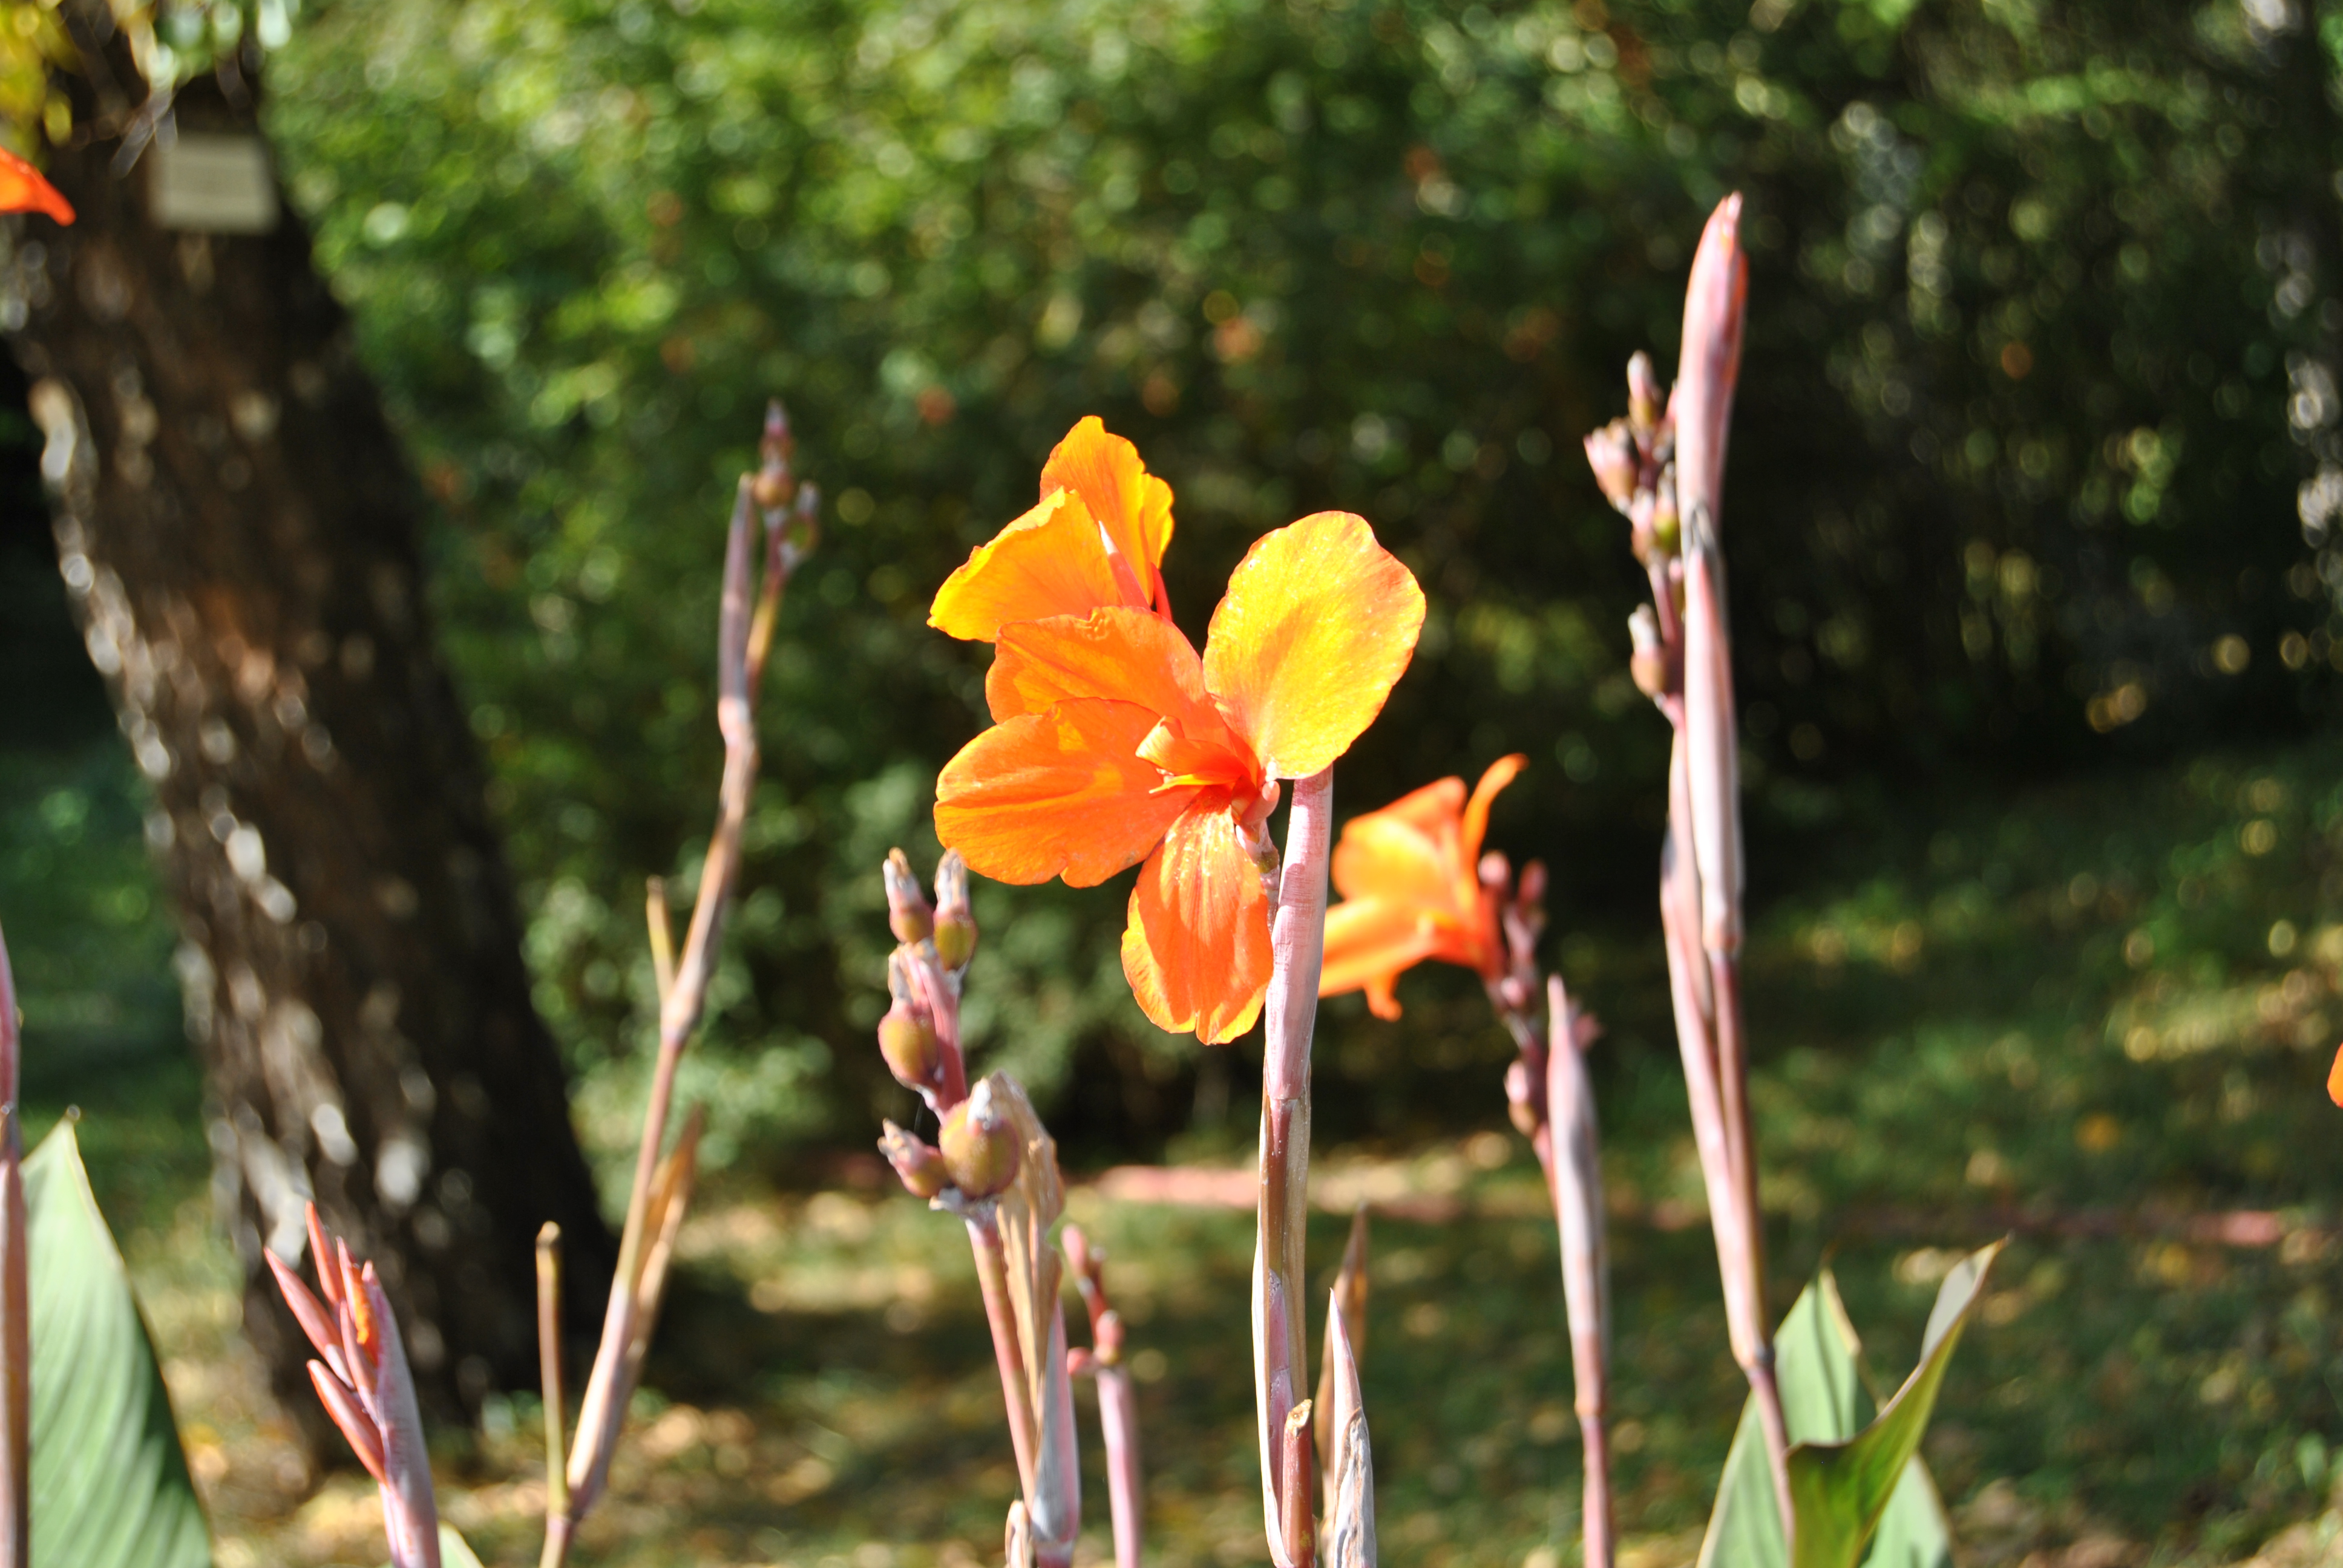 Orange flowers photo